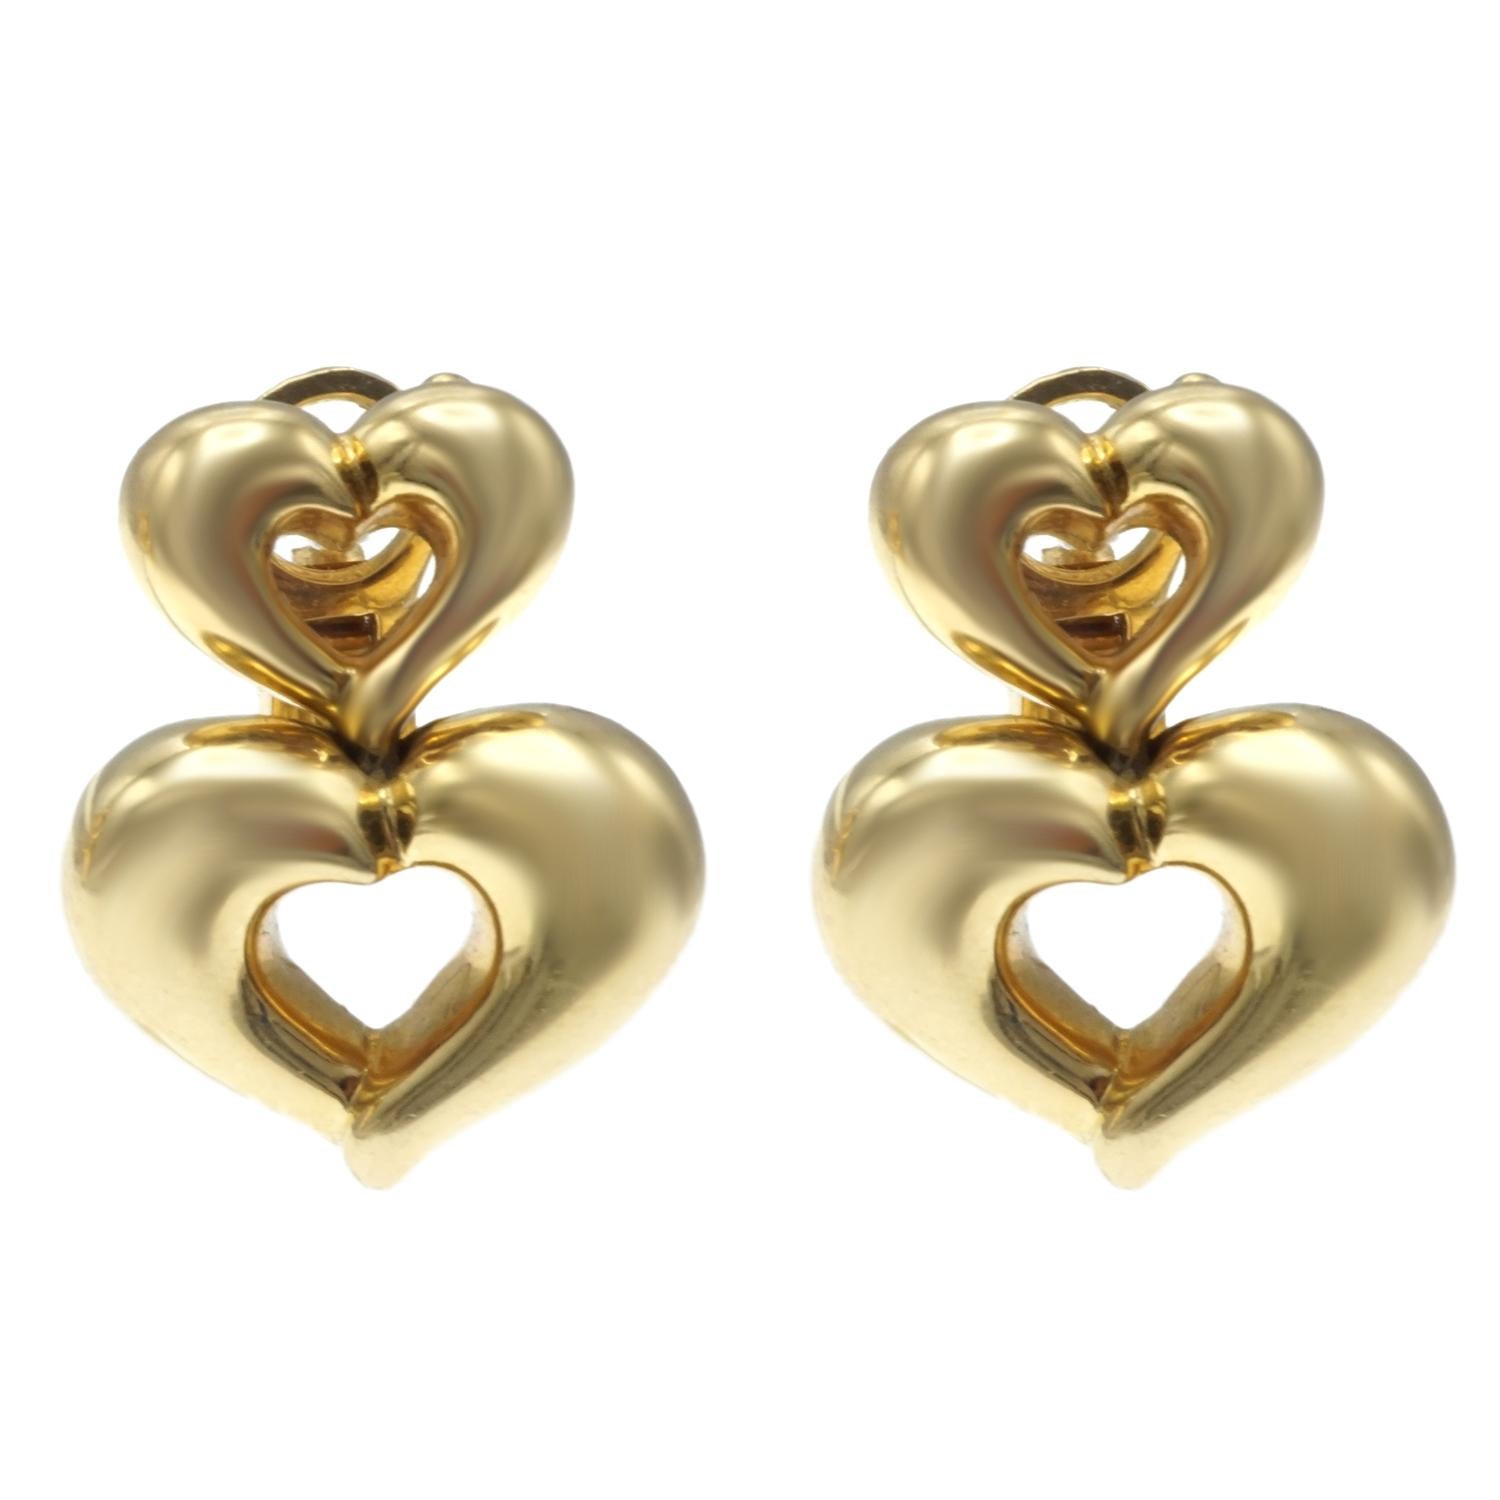 Van Cleef & Arpels 18 Karat Gold Earrings